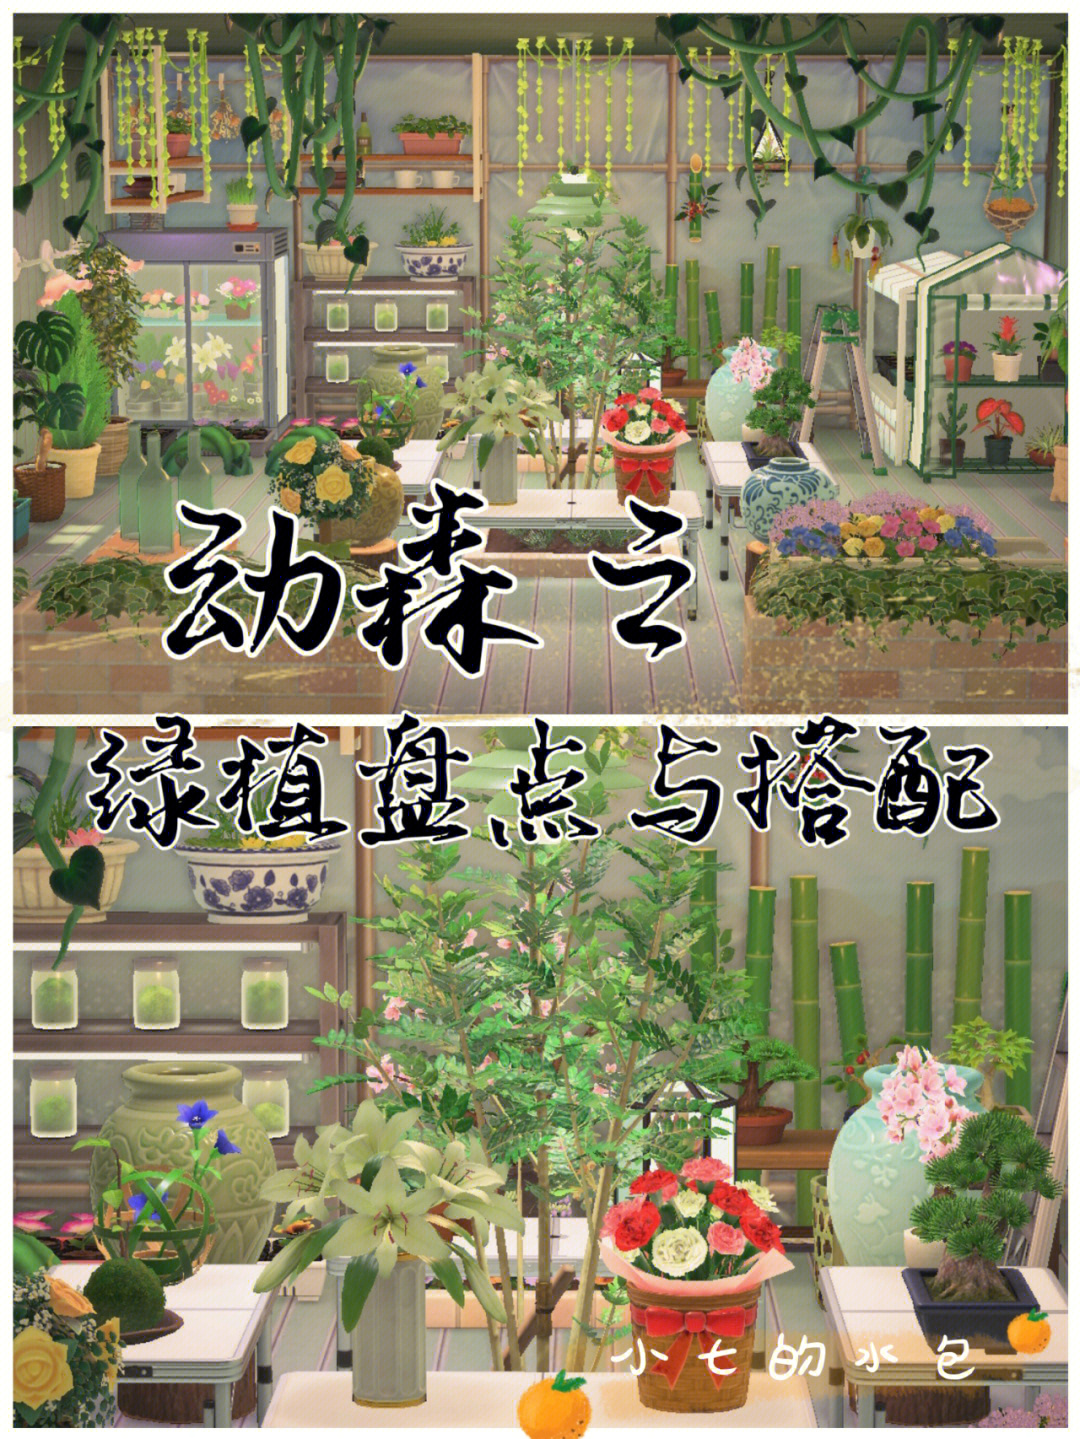 一个自己喜欢的花房/植物房绿植可以跟很多东西搭配使用[气球r]与树木